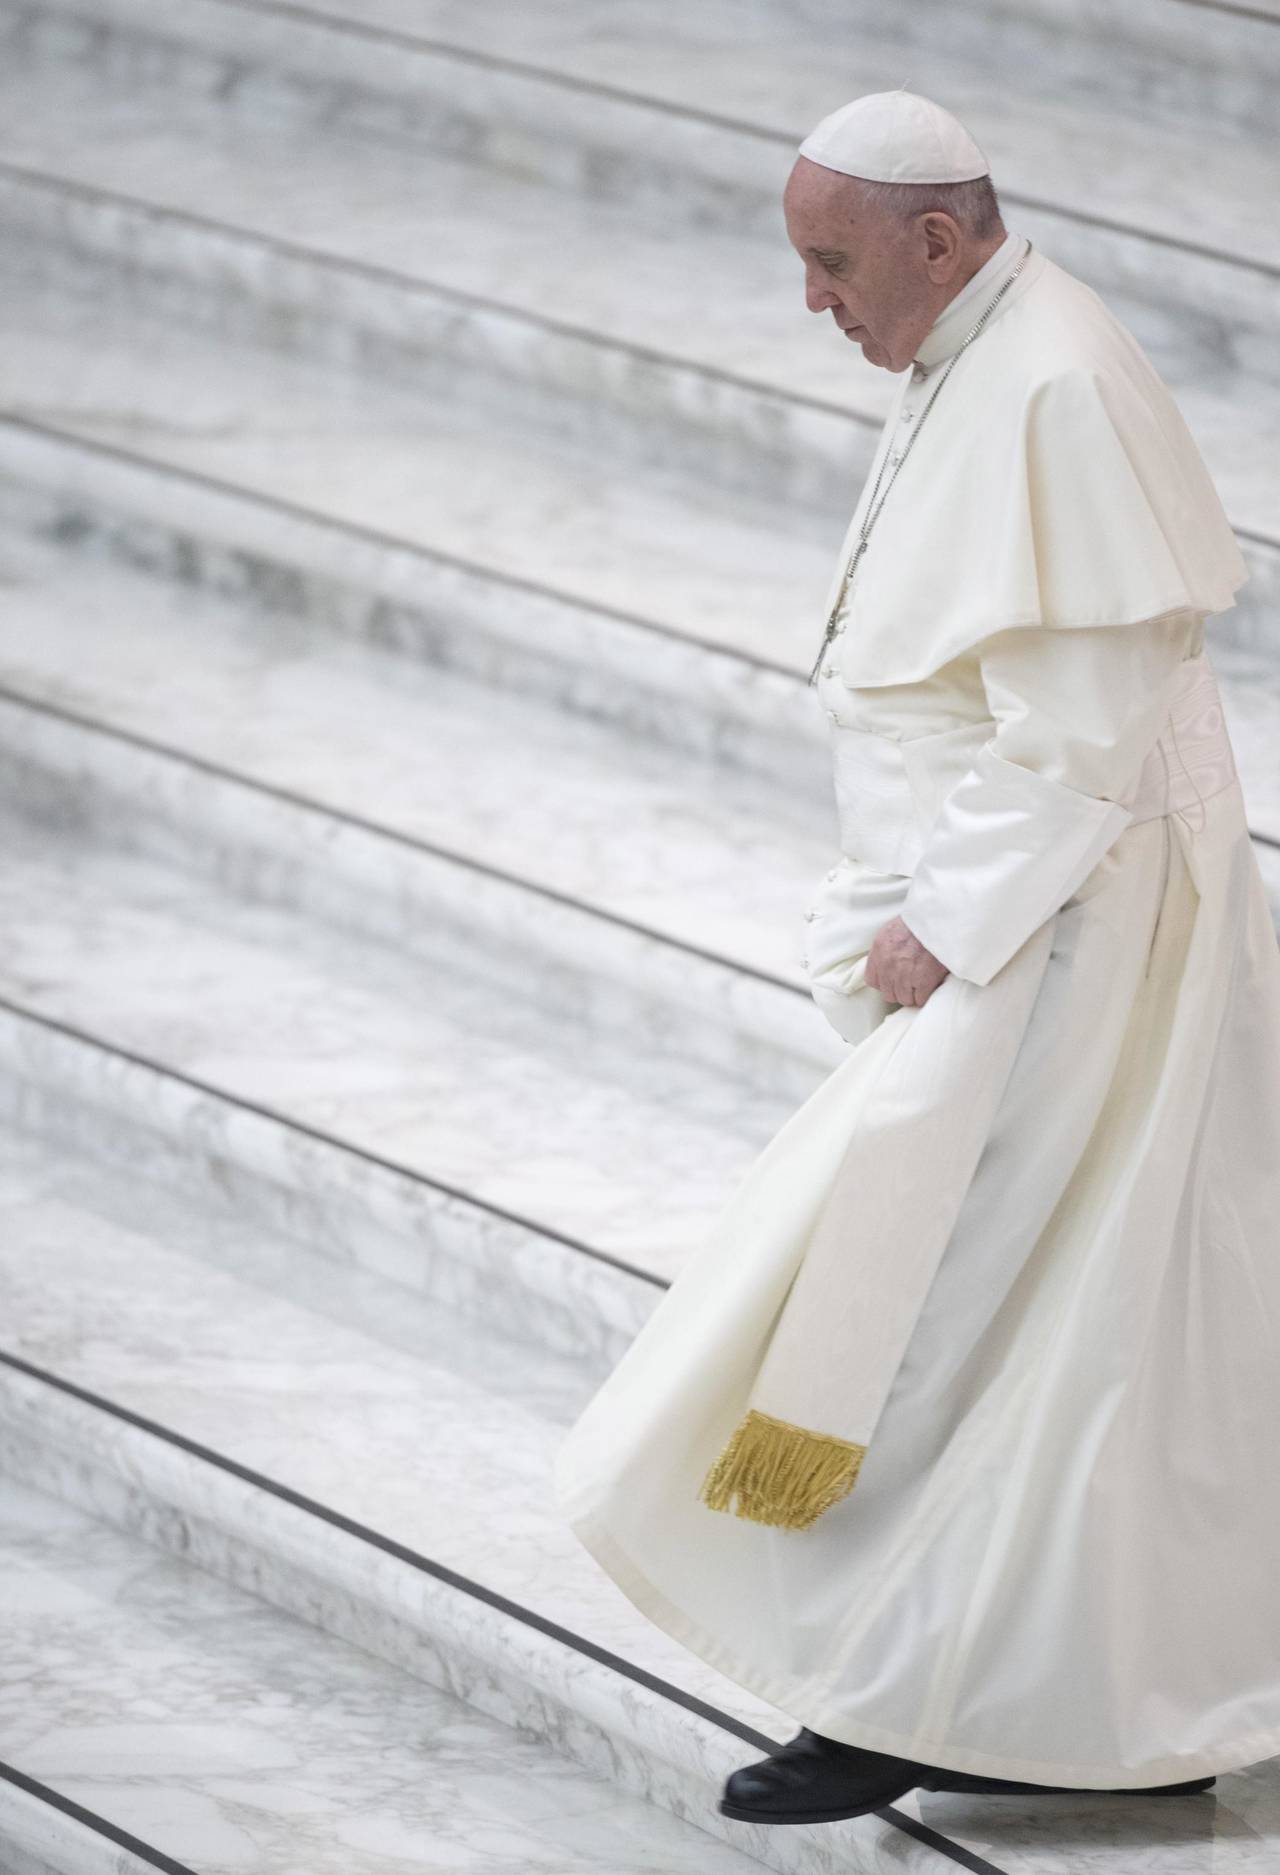 Vaticano ve un 'impacto devastador' por abusos